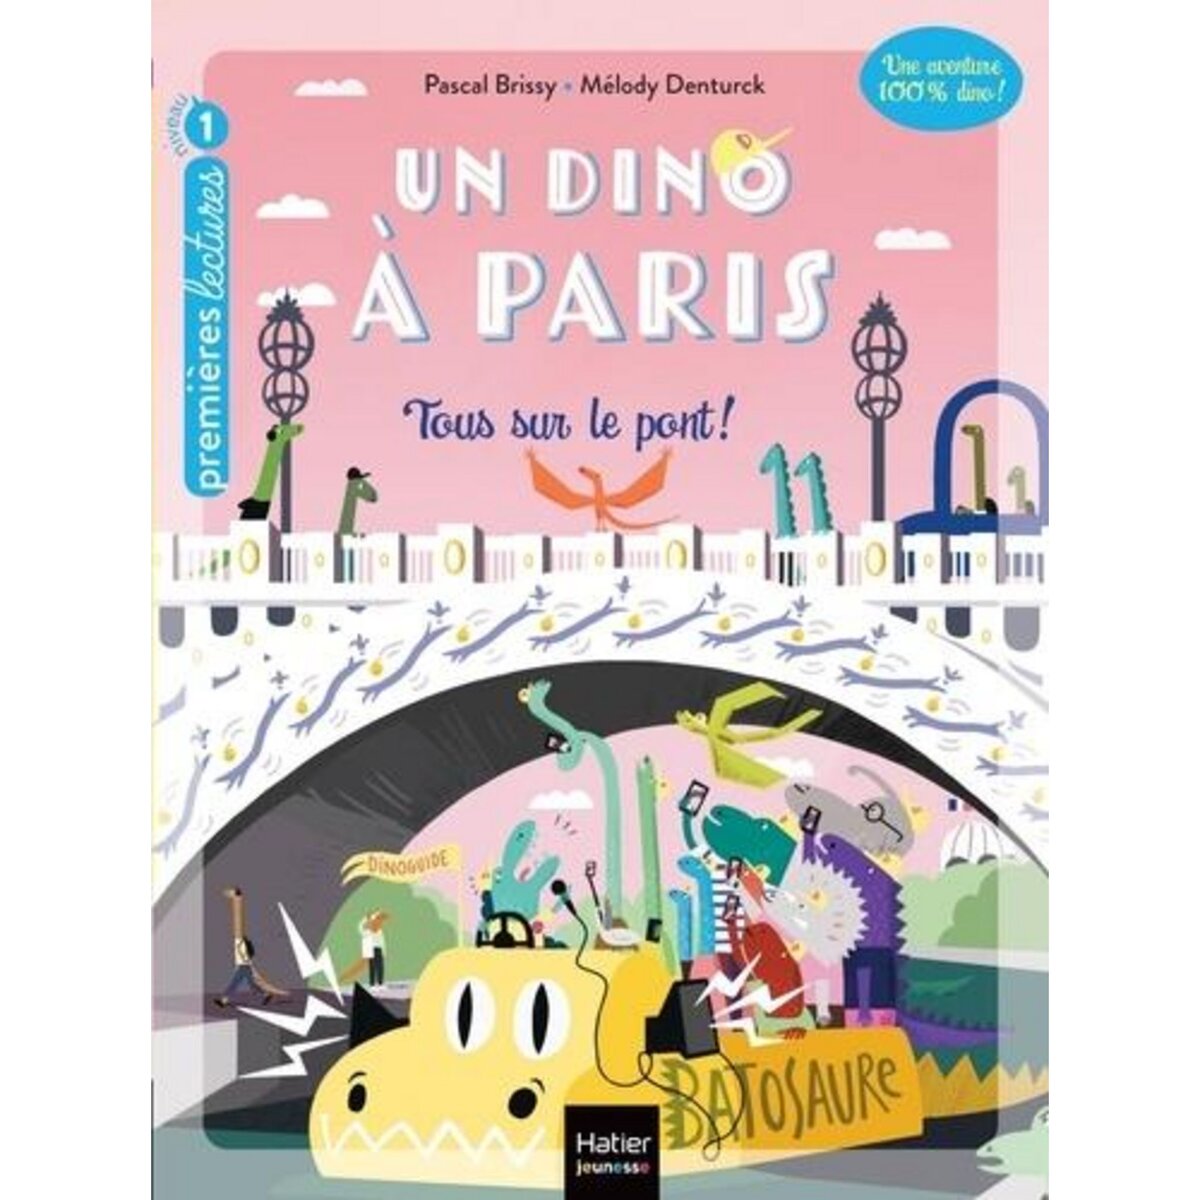  UN DINO A PARIS TOME 4 : TOUS SUR LE PONT !, Brissy Pascal